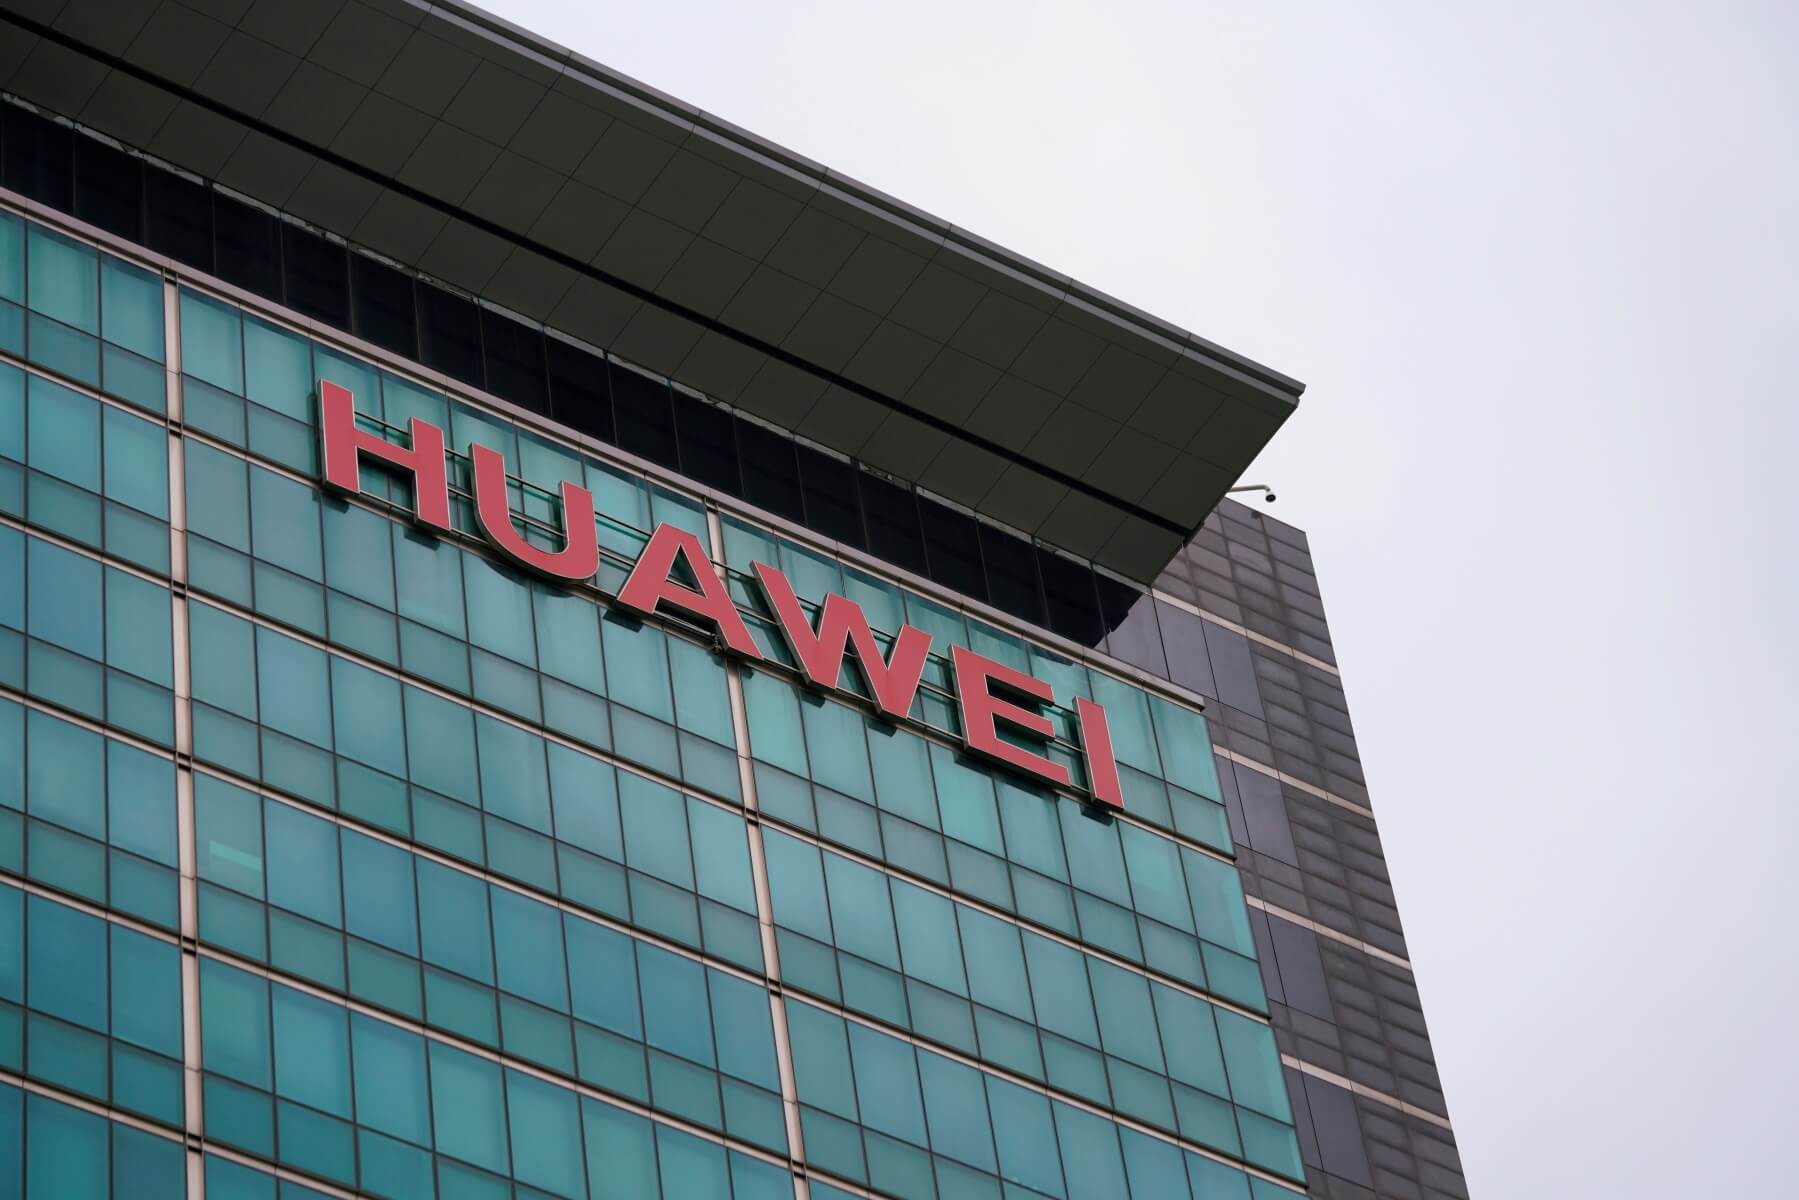 “Μυστική συνεργασία της Huawei με τις ένοπλες δυνάμεις της Κίνας”